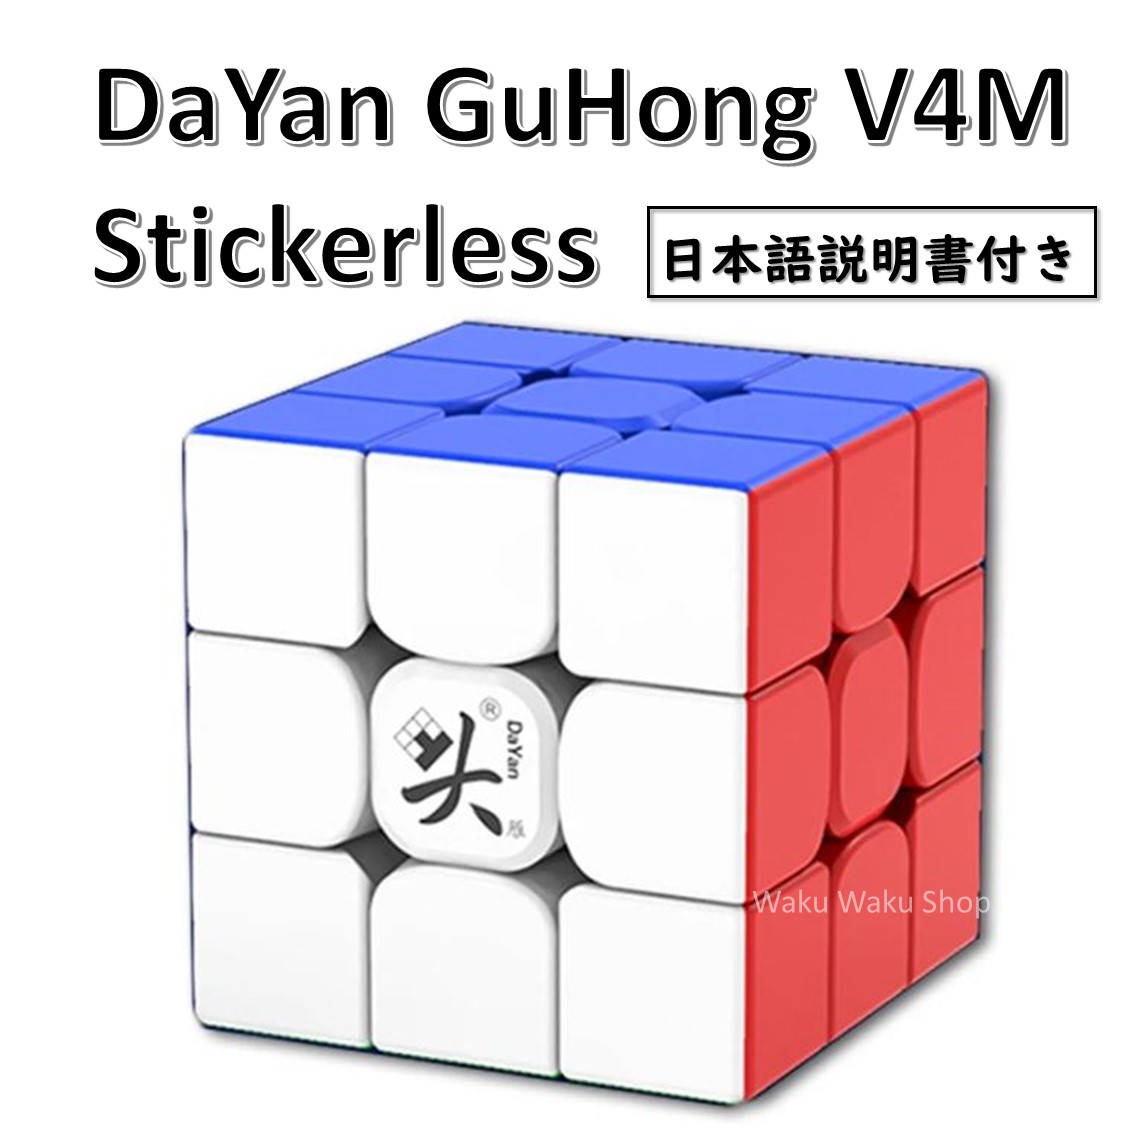 DaYan GuHong V4M 磁石搭載 3x3x3キューブ ステッカーレス ルービックキューブ おすすめ なめらか 【35％OFF】